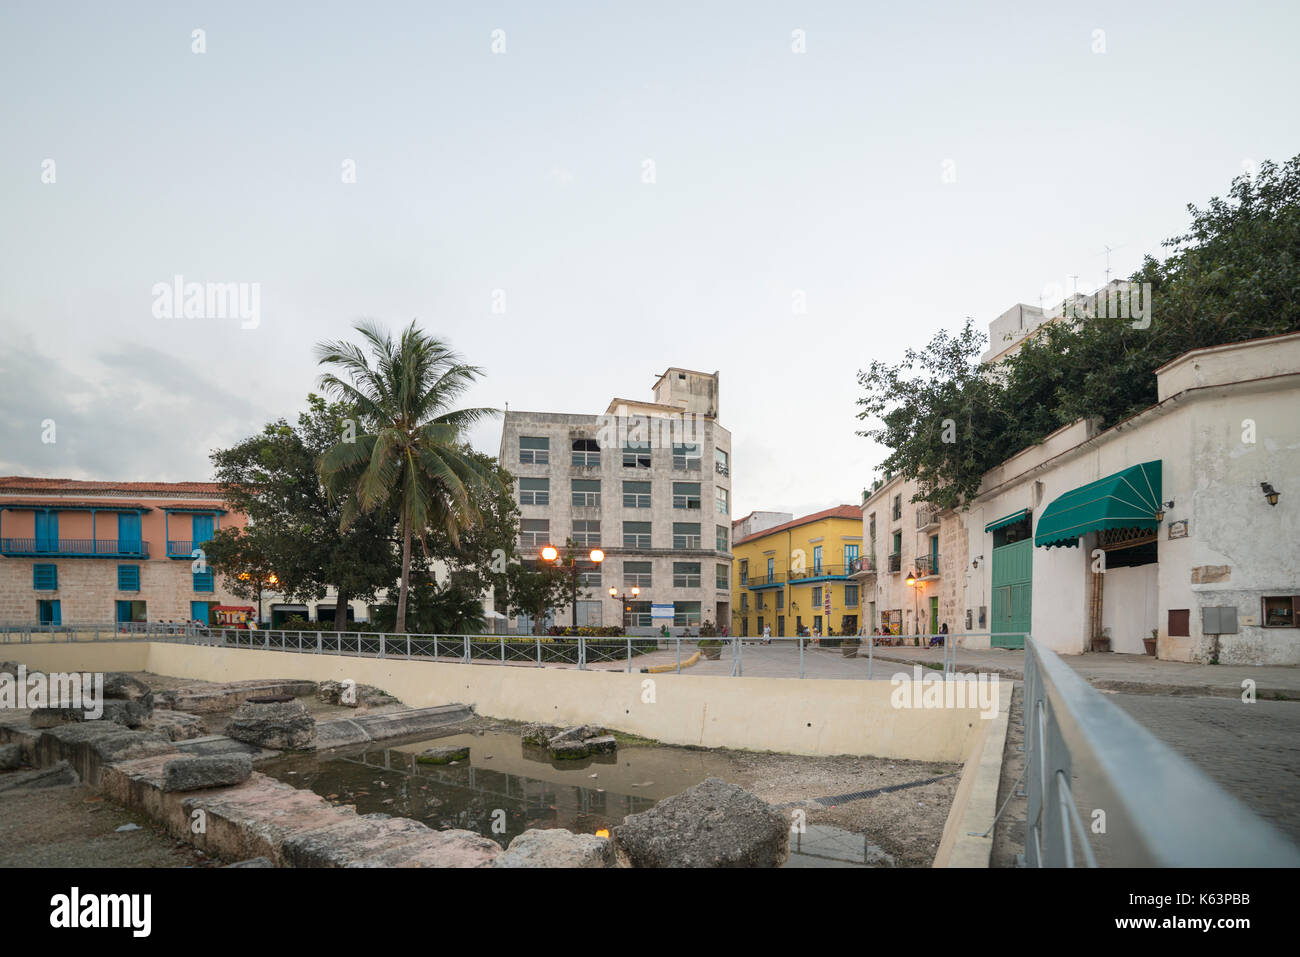 La Havane, 09 janvier, voyage, La Havane, Cuba, La Havane ville . dans l'image : la plaza san cristobal kathedrale havanna. (Photo de ulrich roth) Banque D'Images